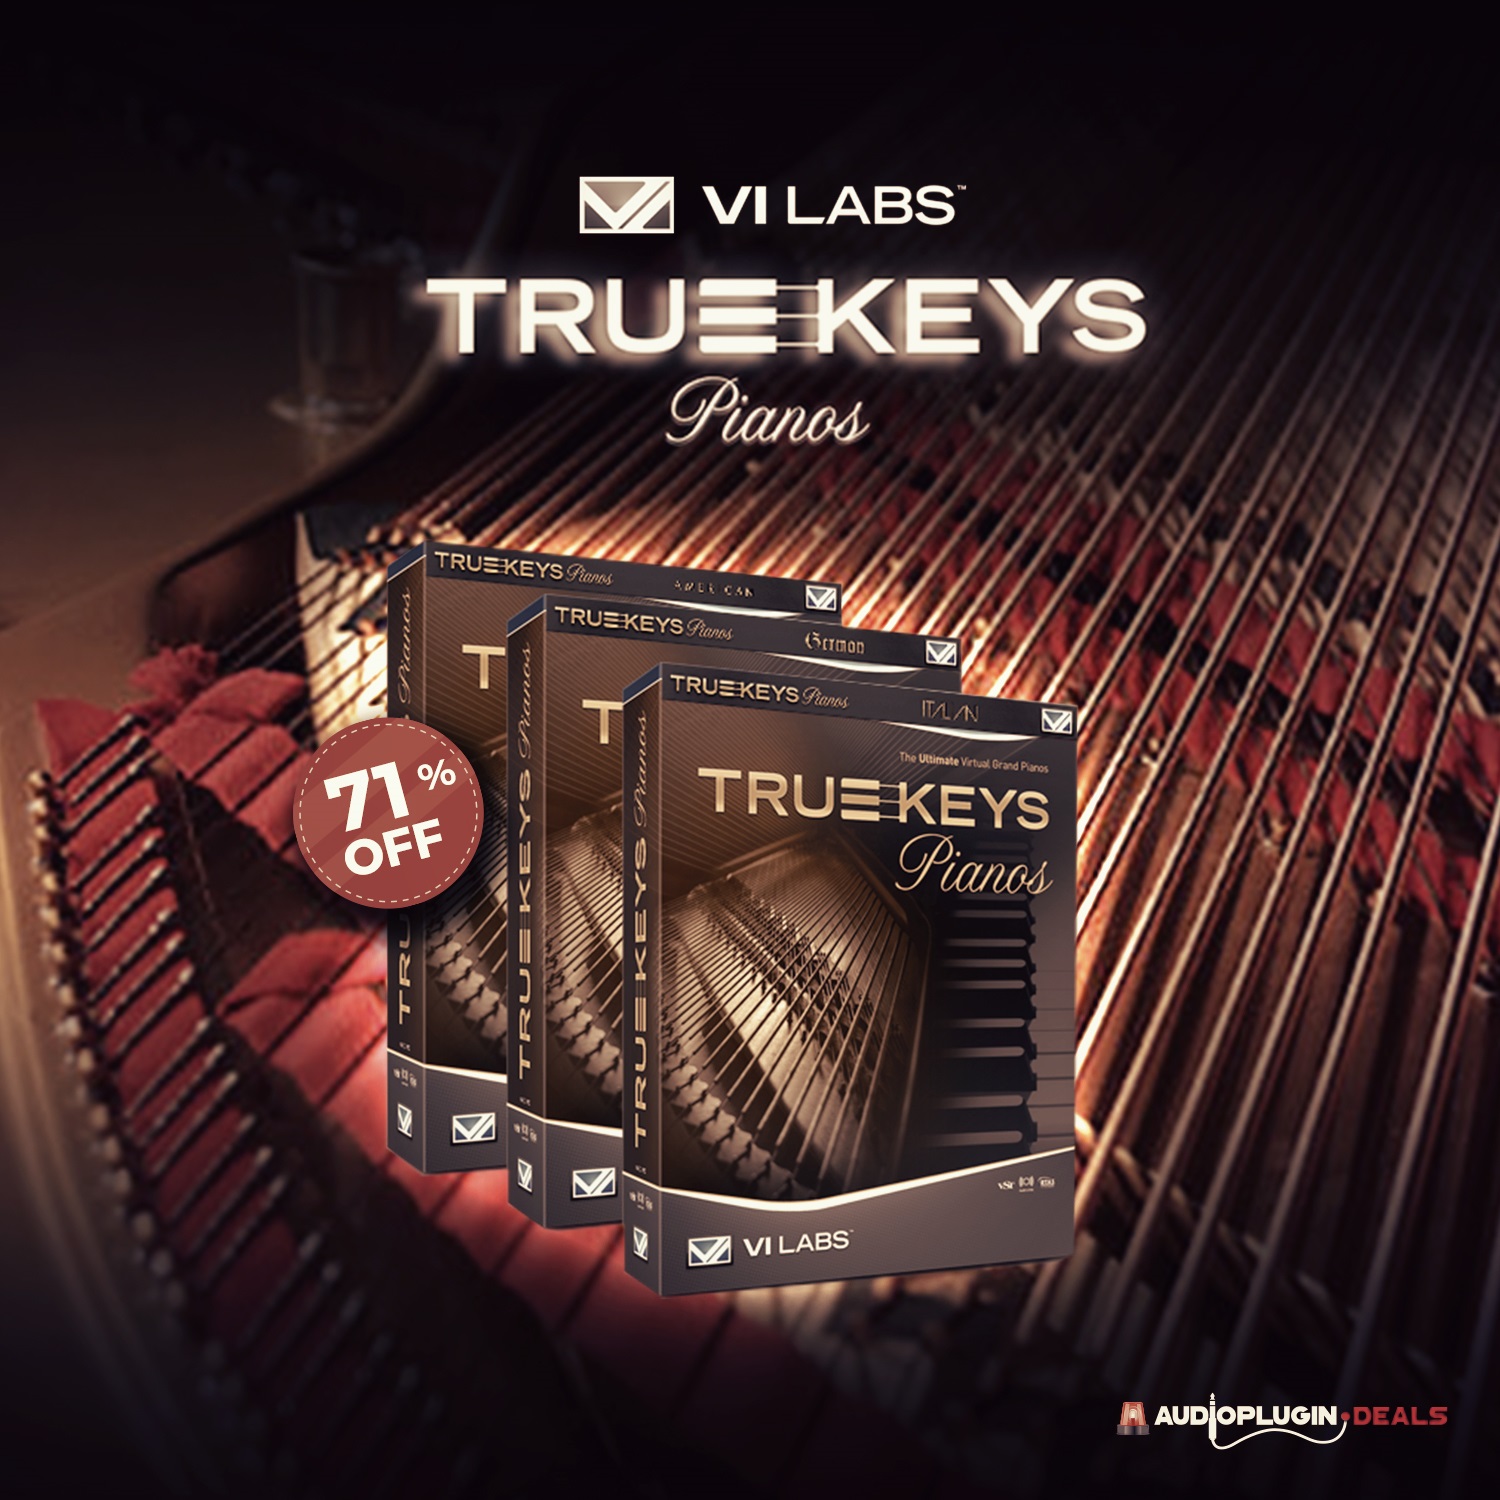 True Keys Piano Bundle by Vi Labs (71% off)